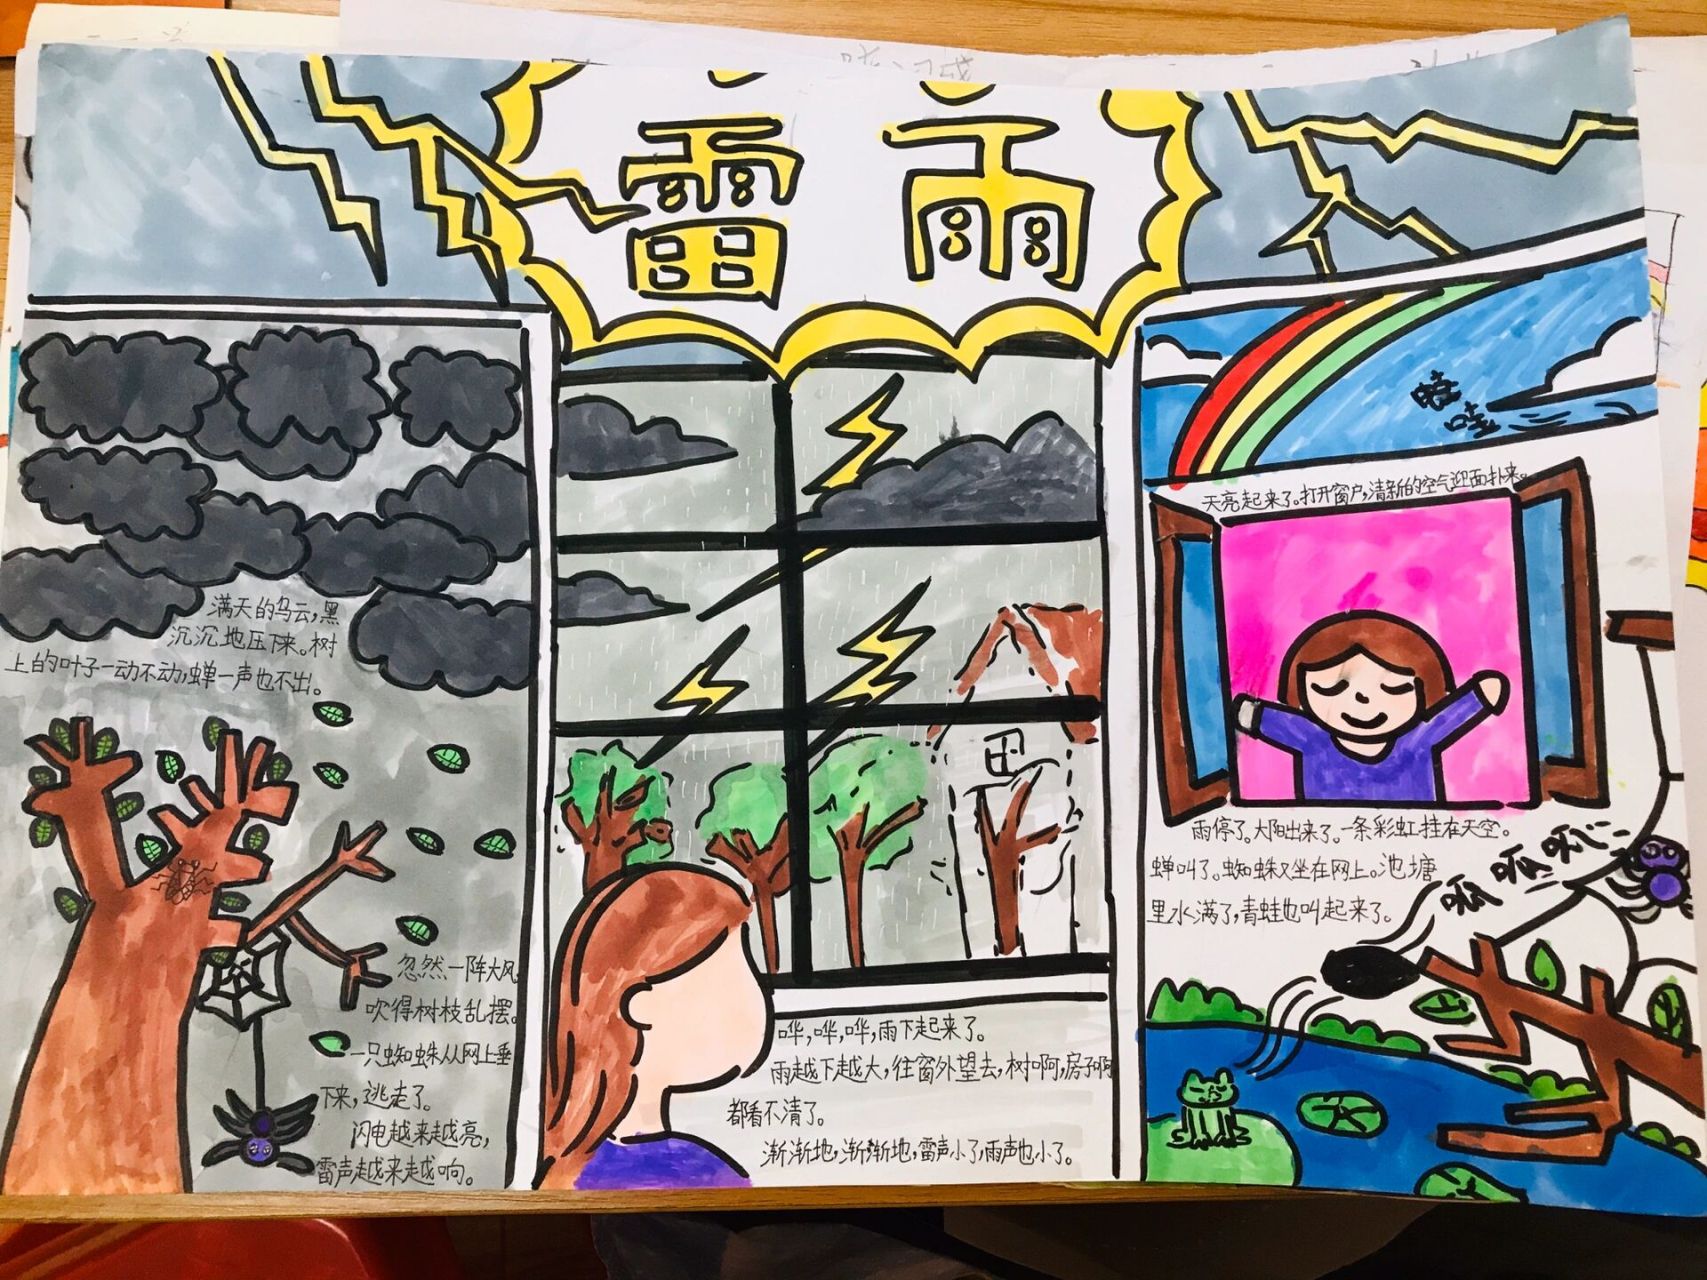 二下《雷雨》课文插图 作业:根据课文画一画雷雨前,雷雨中,雷雨后的